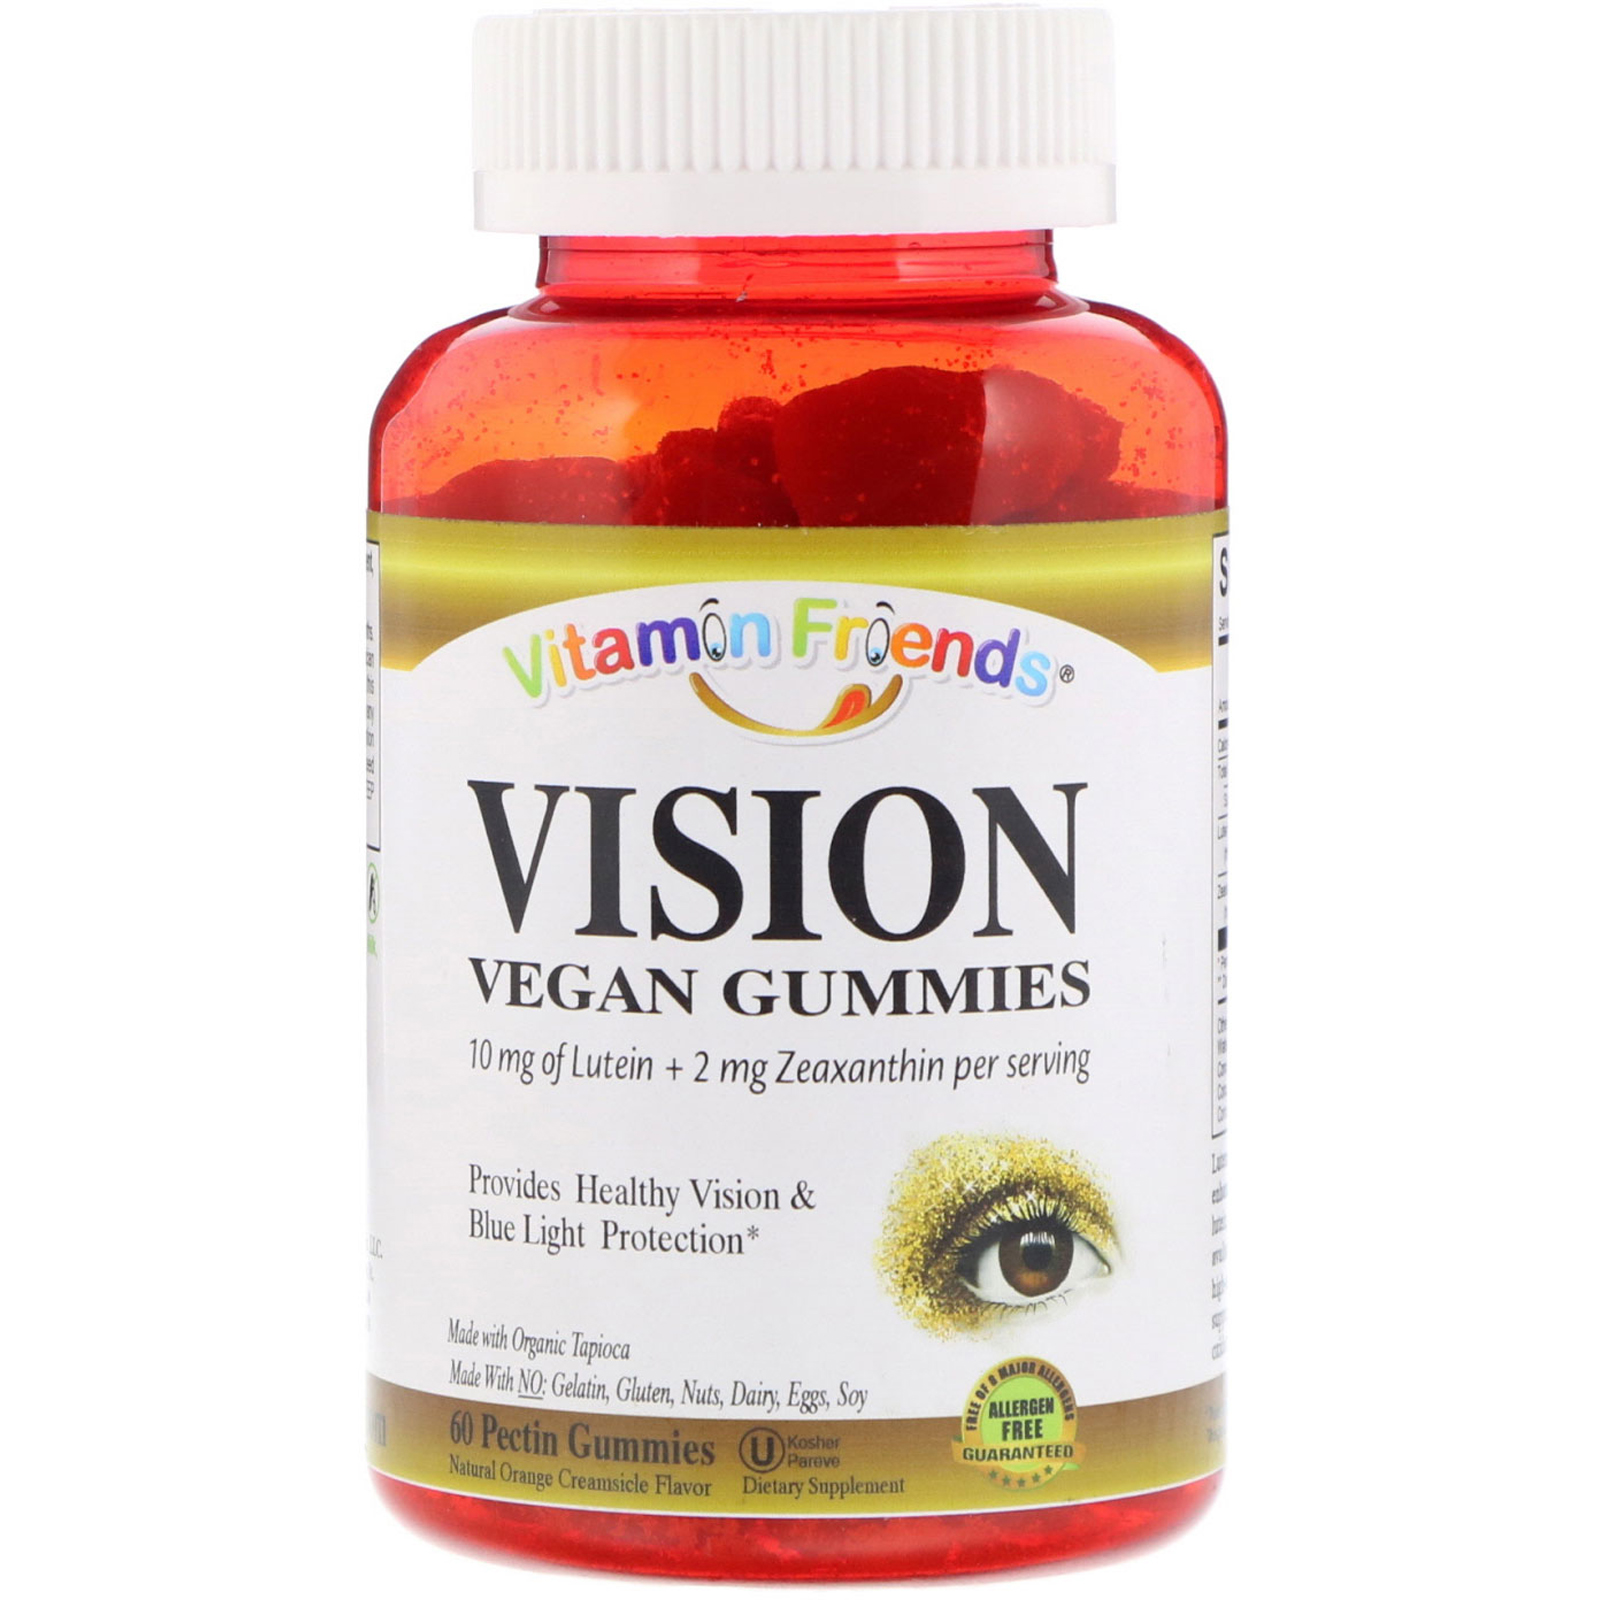 vitamin friends, vision, vegan gummies, natural orange cream